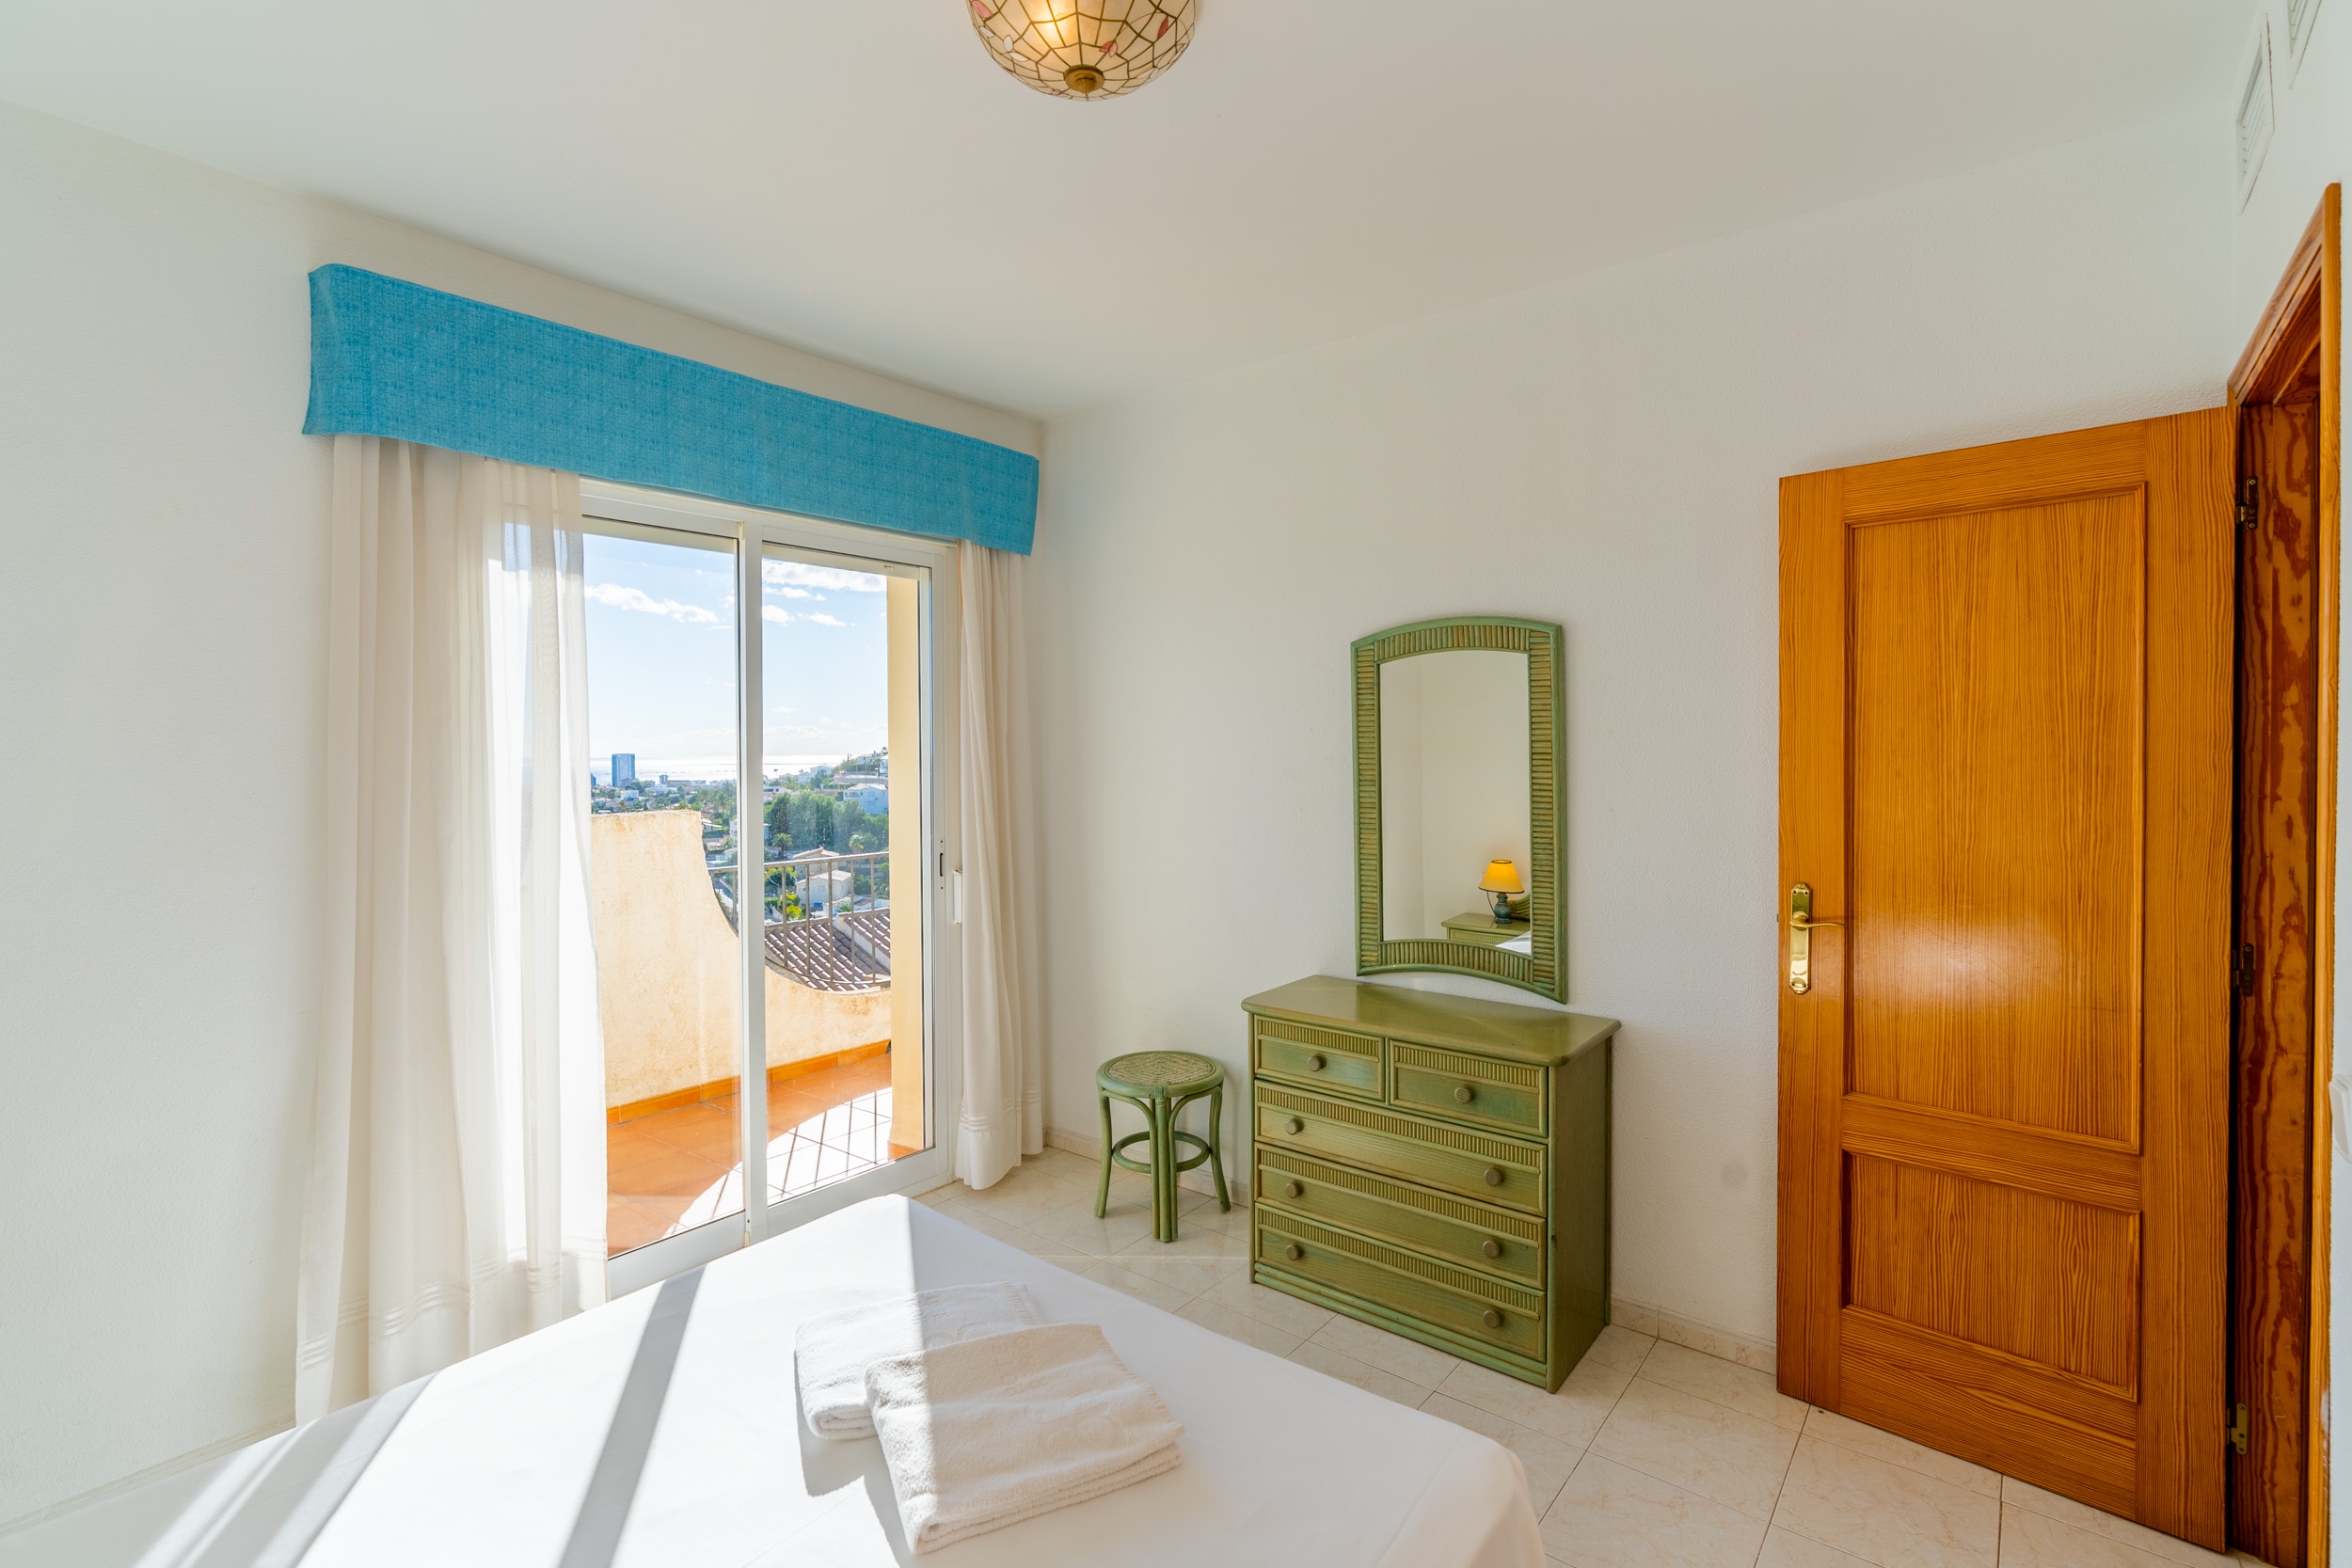 Bungalow en venta en Calpe en zona residencial con vistas al mar y Peñon de Ifach